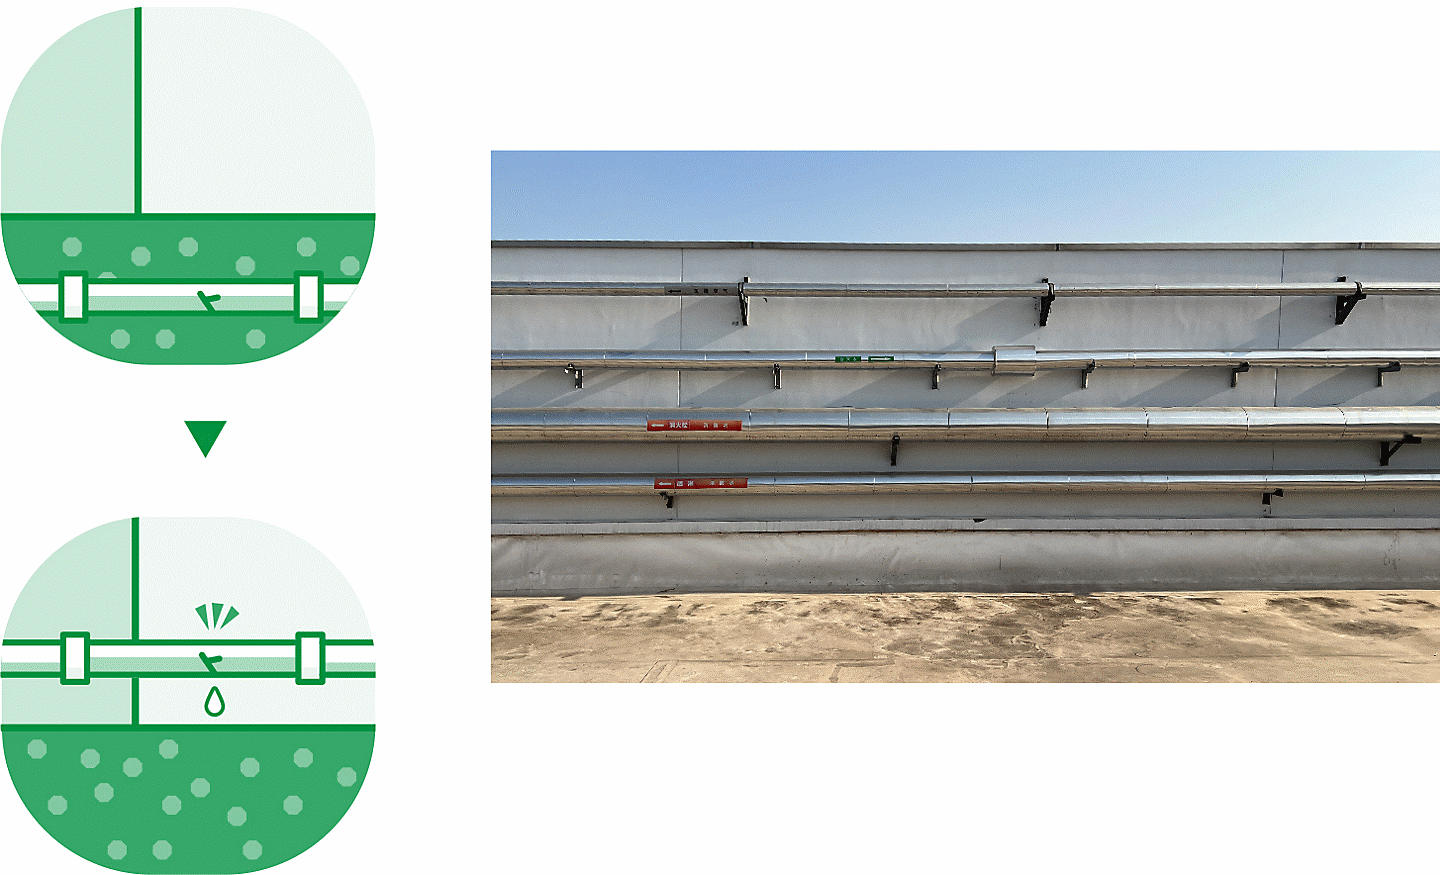 رسم تخطيطي على اليسار (يسار) وصورة فوتوغرافية (يمين) يوضحان نقل أنابيب المياه إلى مواقع فوق الأرض لتبسيط صيانة التسرب وصور أنابيب المياه على اليمين.